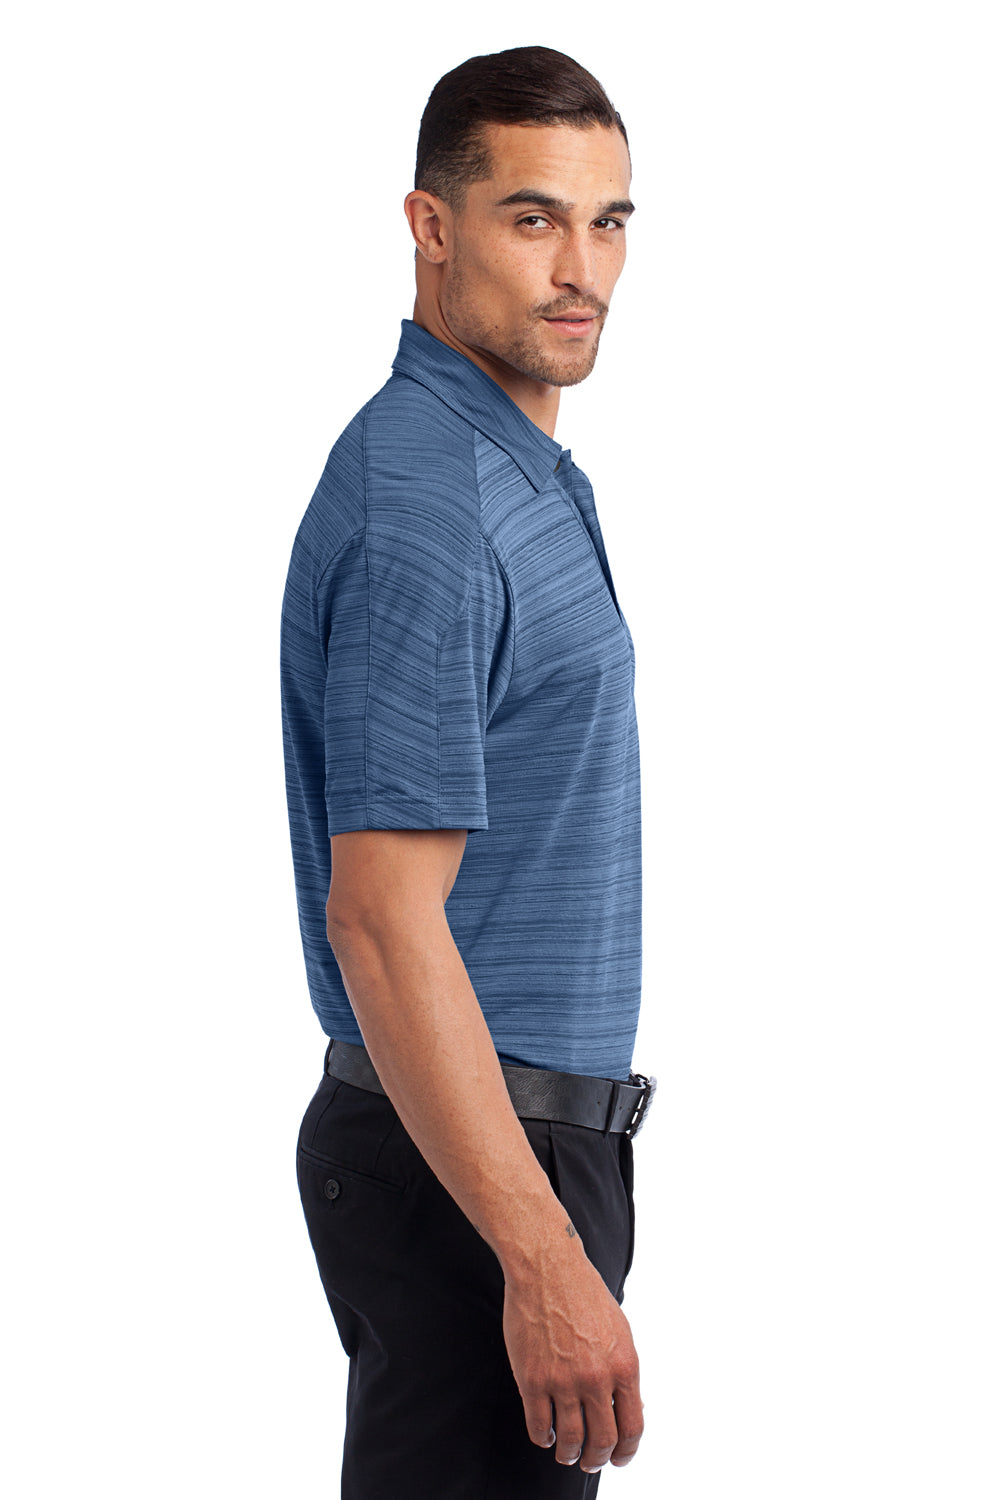 Ogio OG116 Mens Elixir Moisture Wicking Short Sleeve Polo Shirt Indigo Blue Side